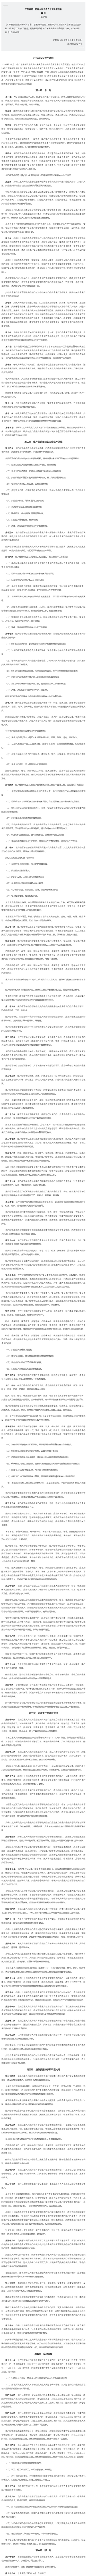 新修订的《广东省安全生产条例》全文发布，10月1日起施行.png